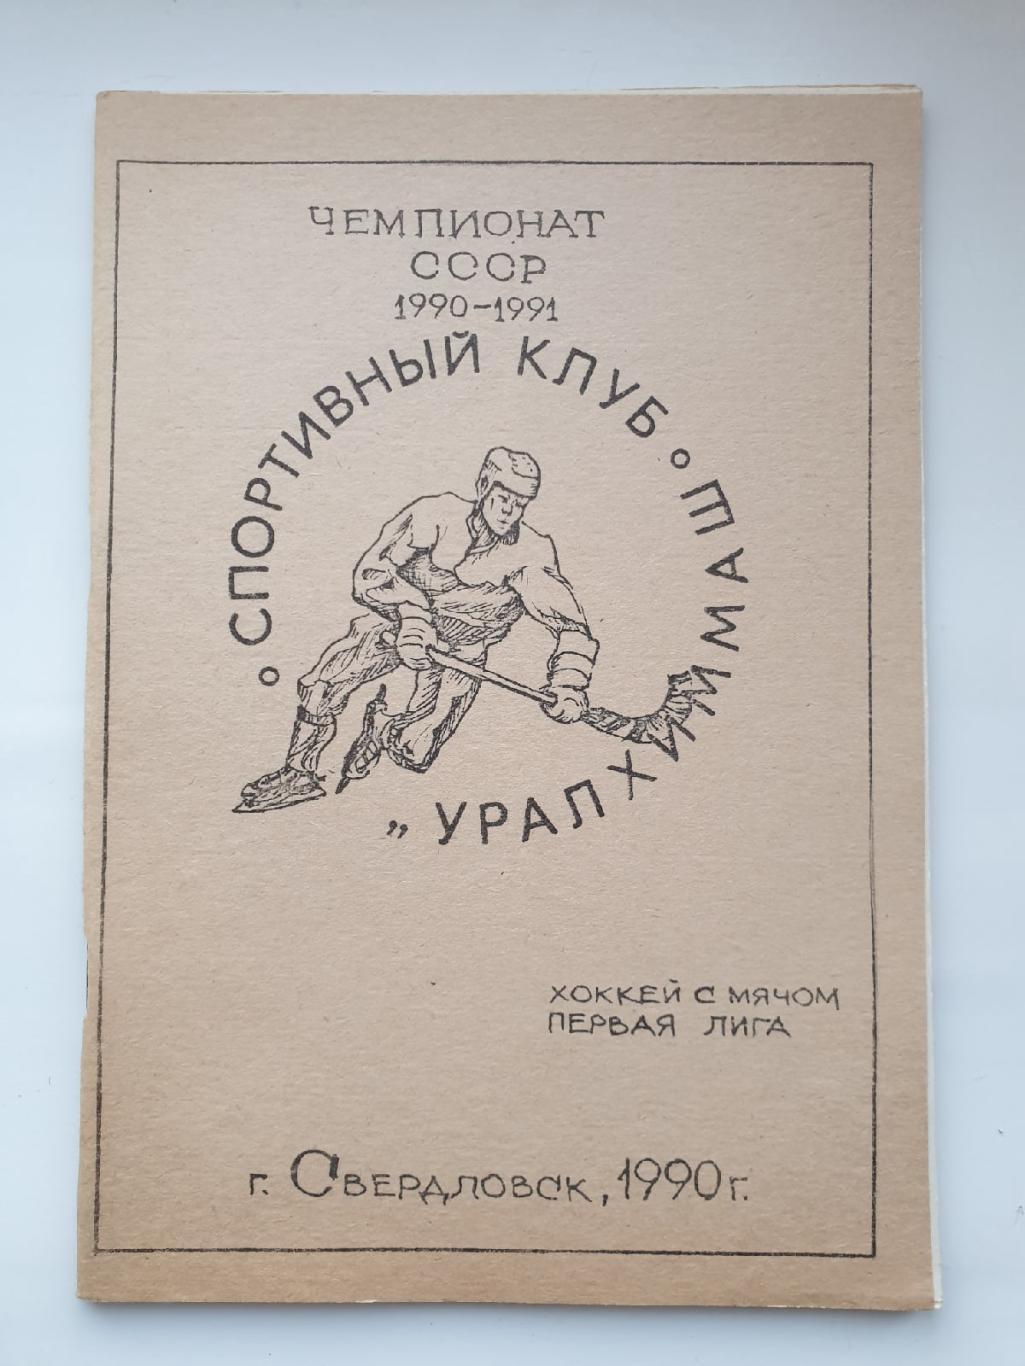 Хоккей с мячом. Свердловск 1990/91 Уралхиммаш (42 страницы)